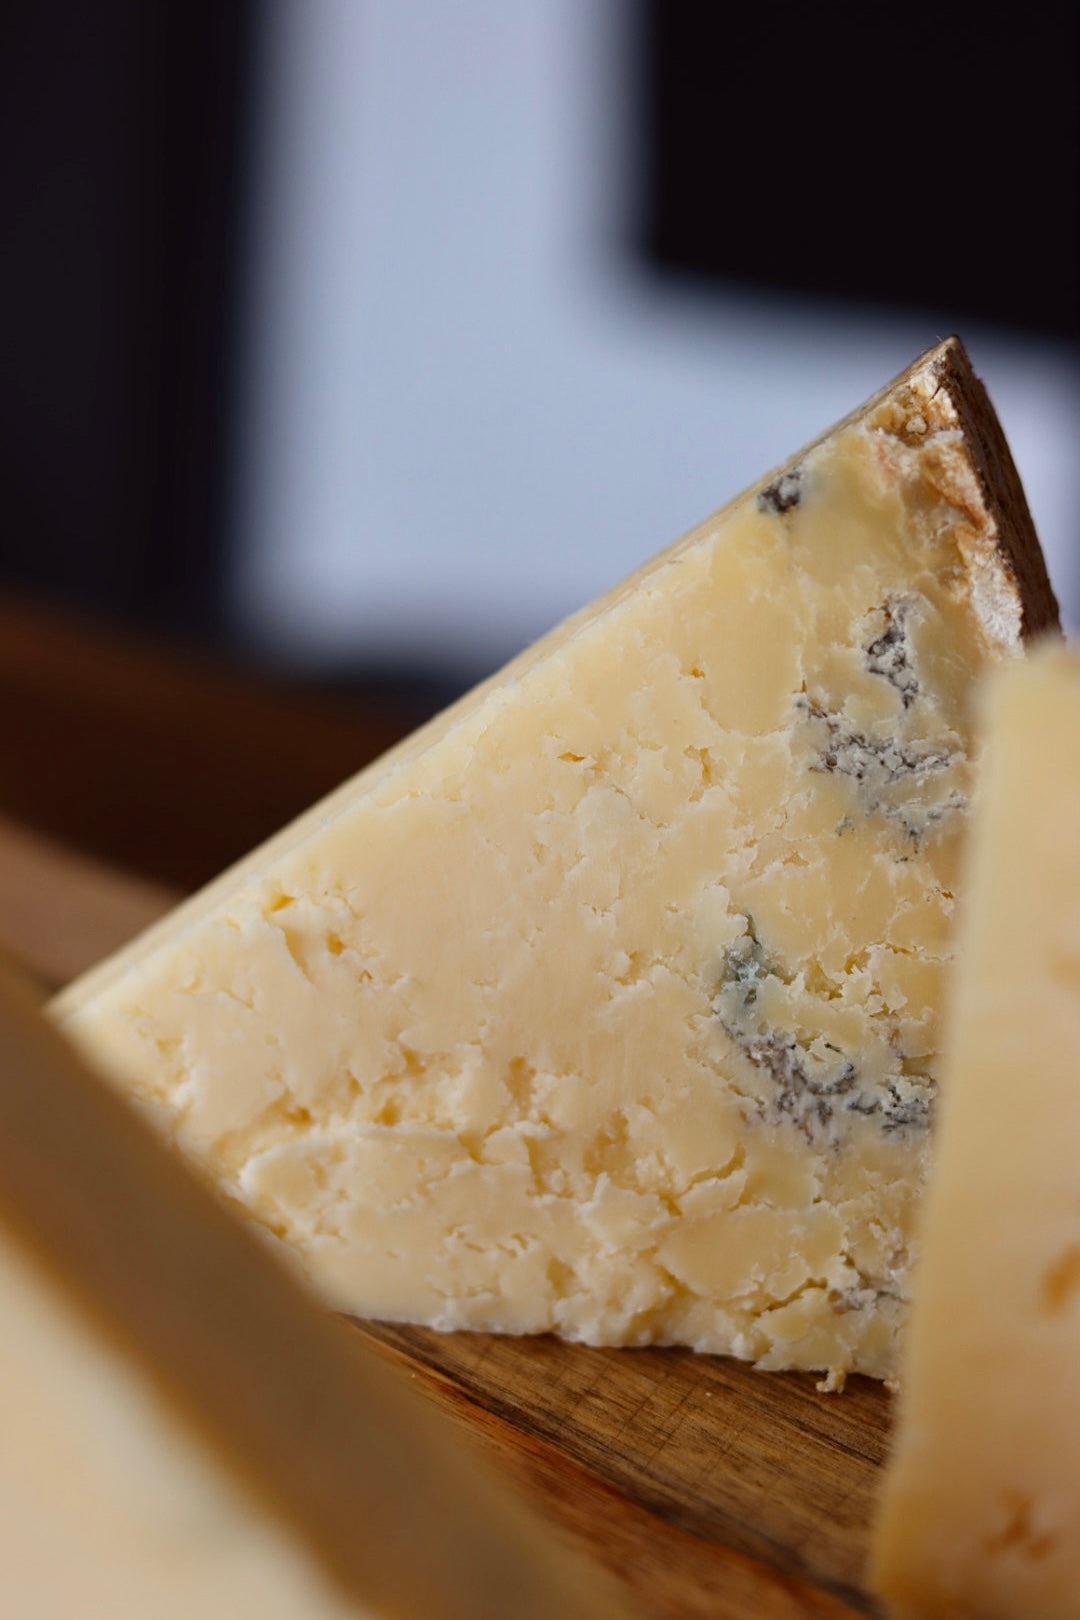 Box Apéro : fromages et charcuteries traditionnels du Cantal – Les